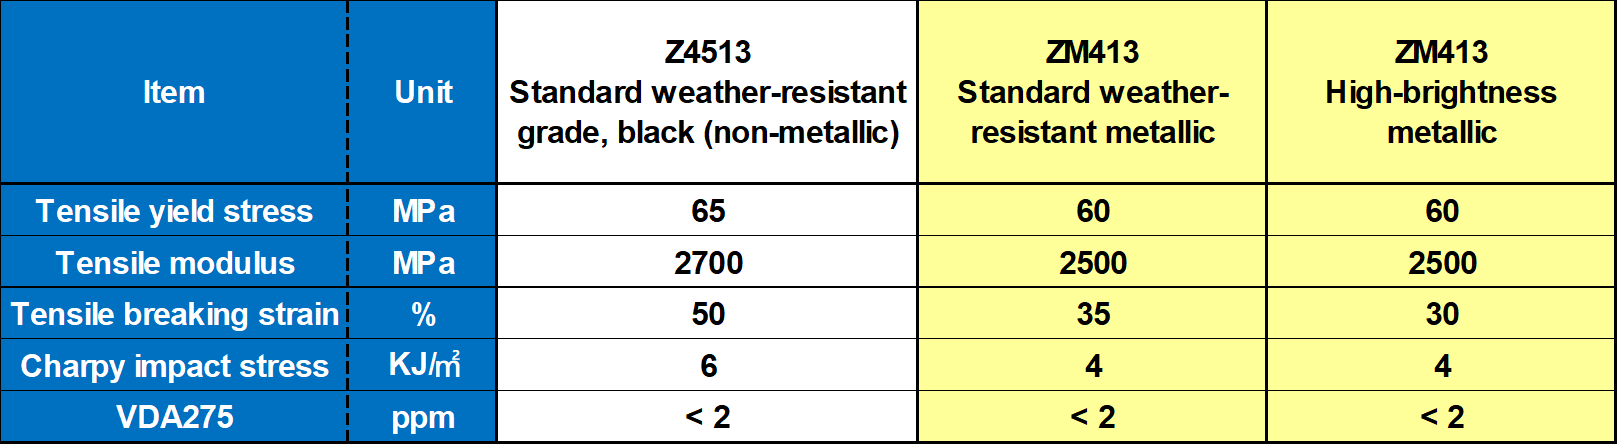 Features of TENAC-C ZM413